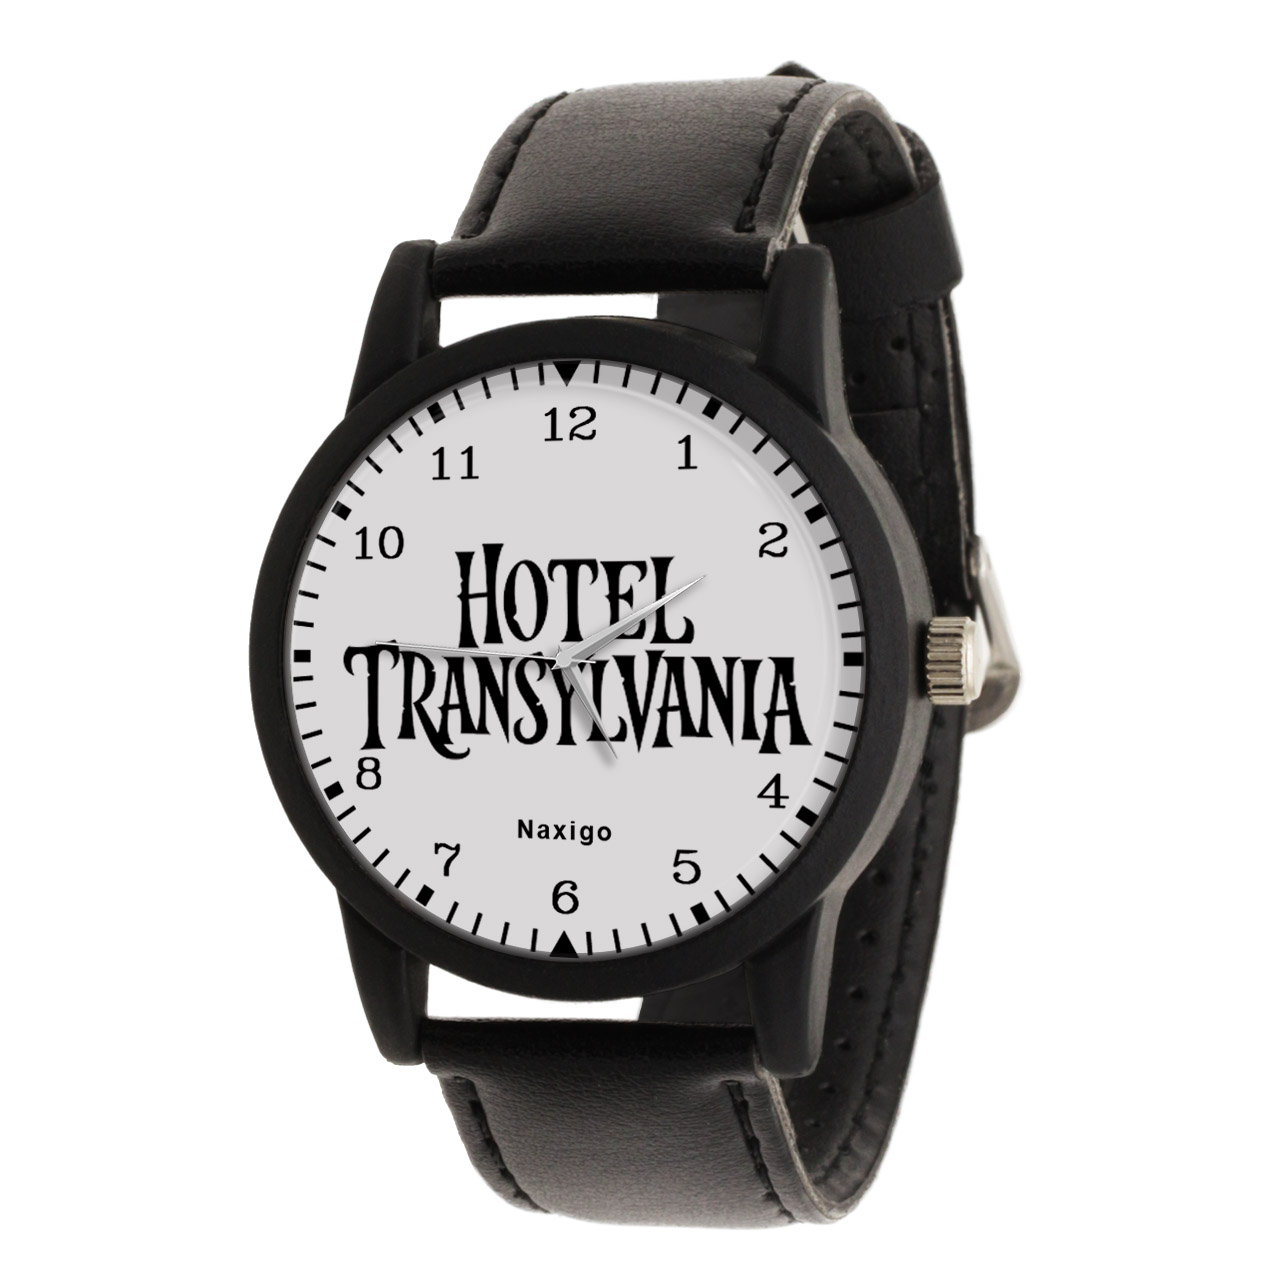 ساعت مچی عقربه ای ناکسیگو مدل Hotel Transylvania کد LF14349